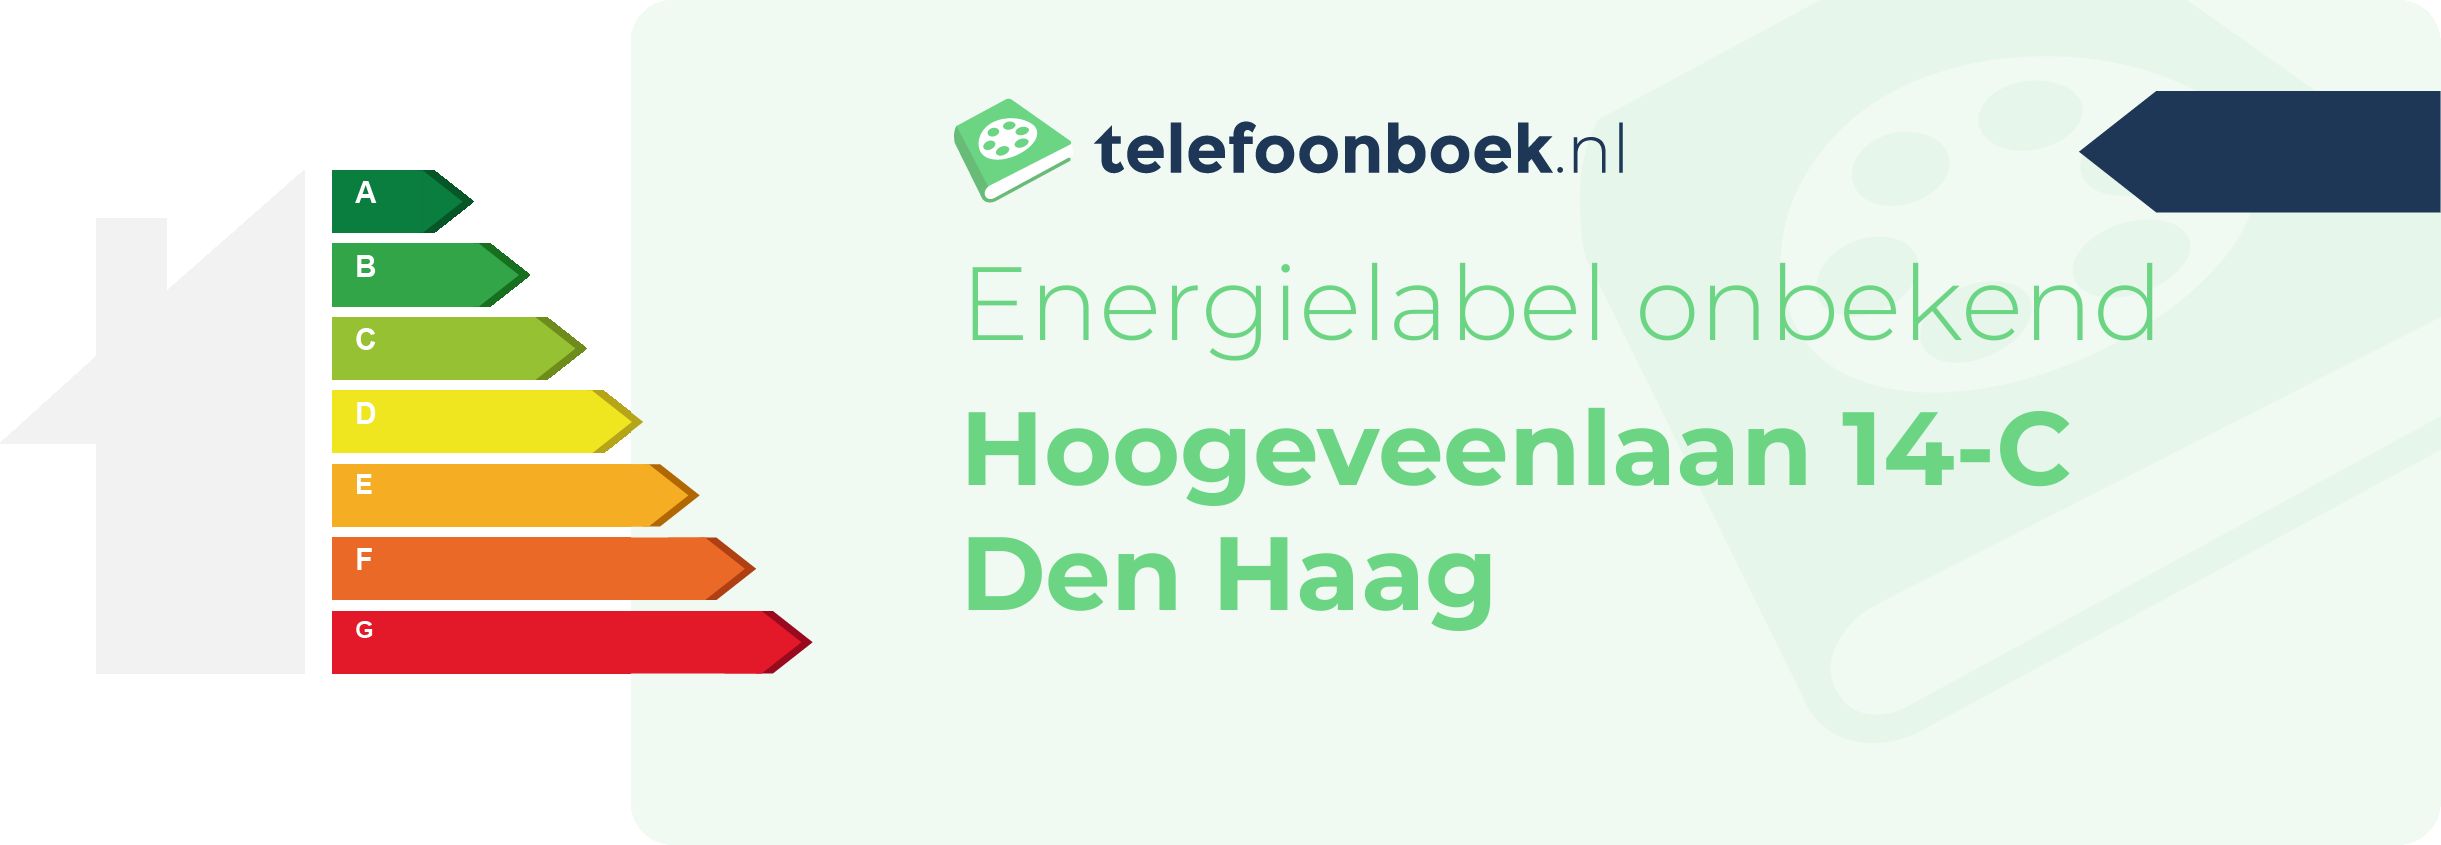 Energielabel Hoogeveenlaan 14-C Den Haag